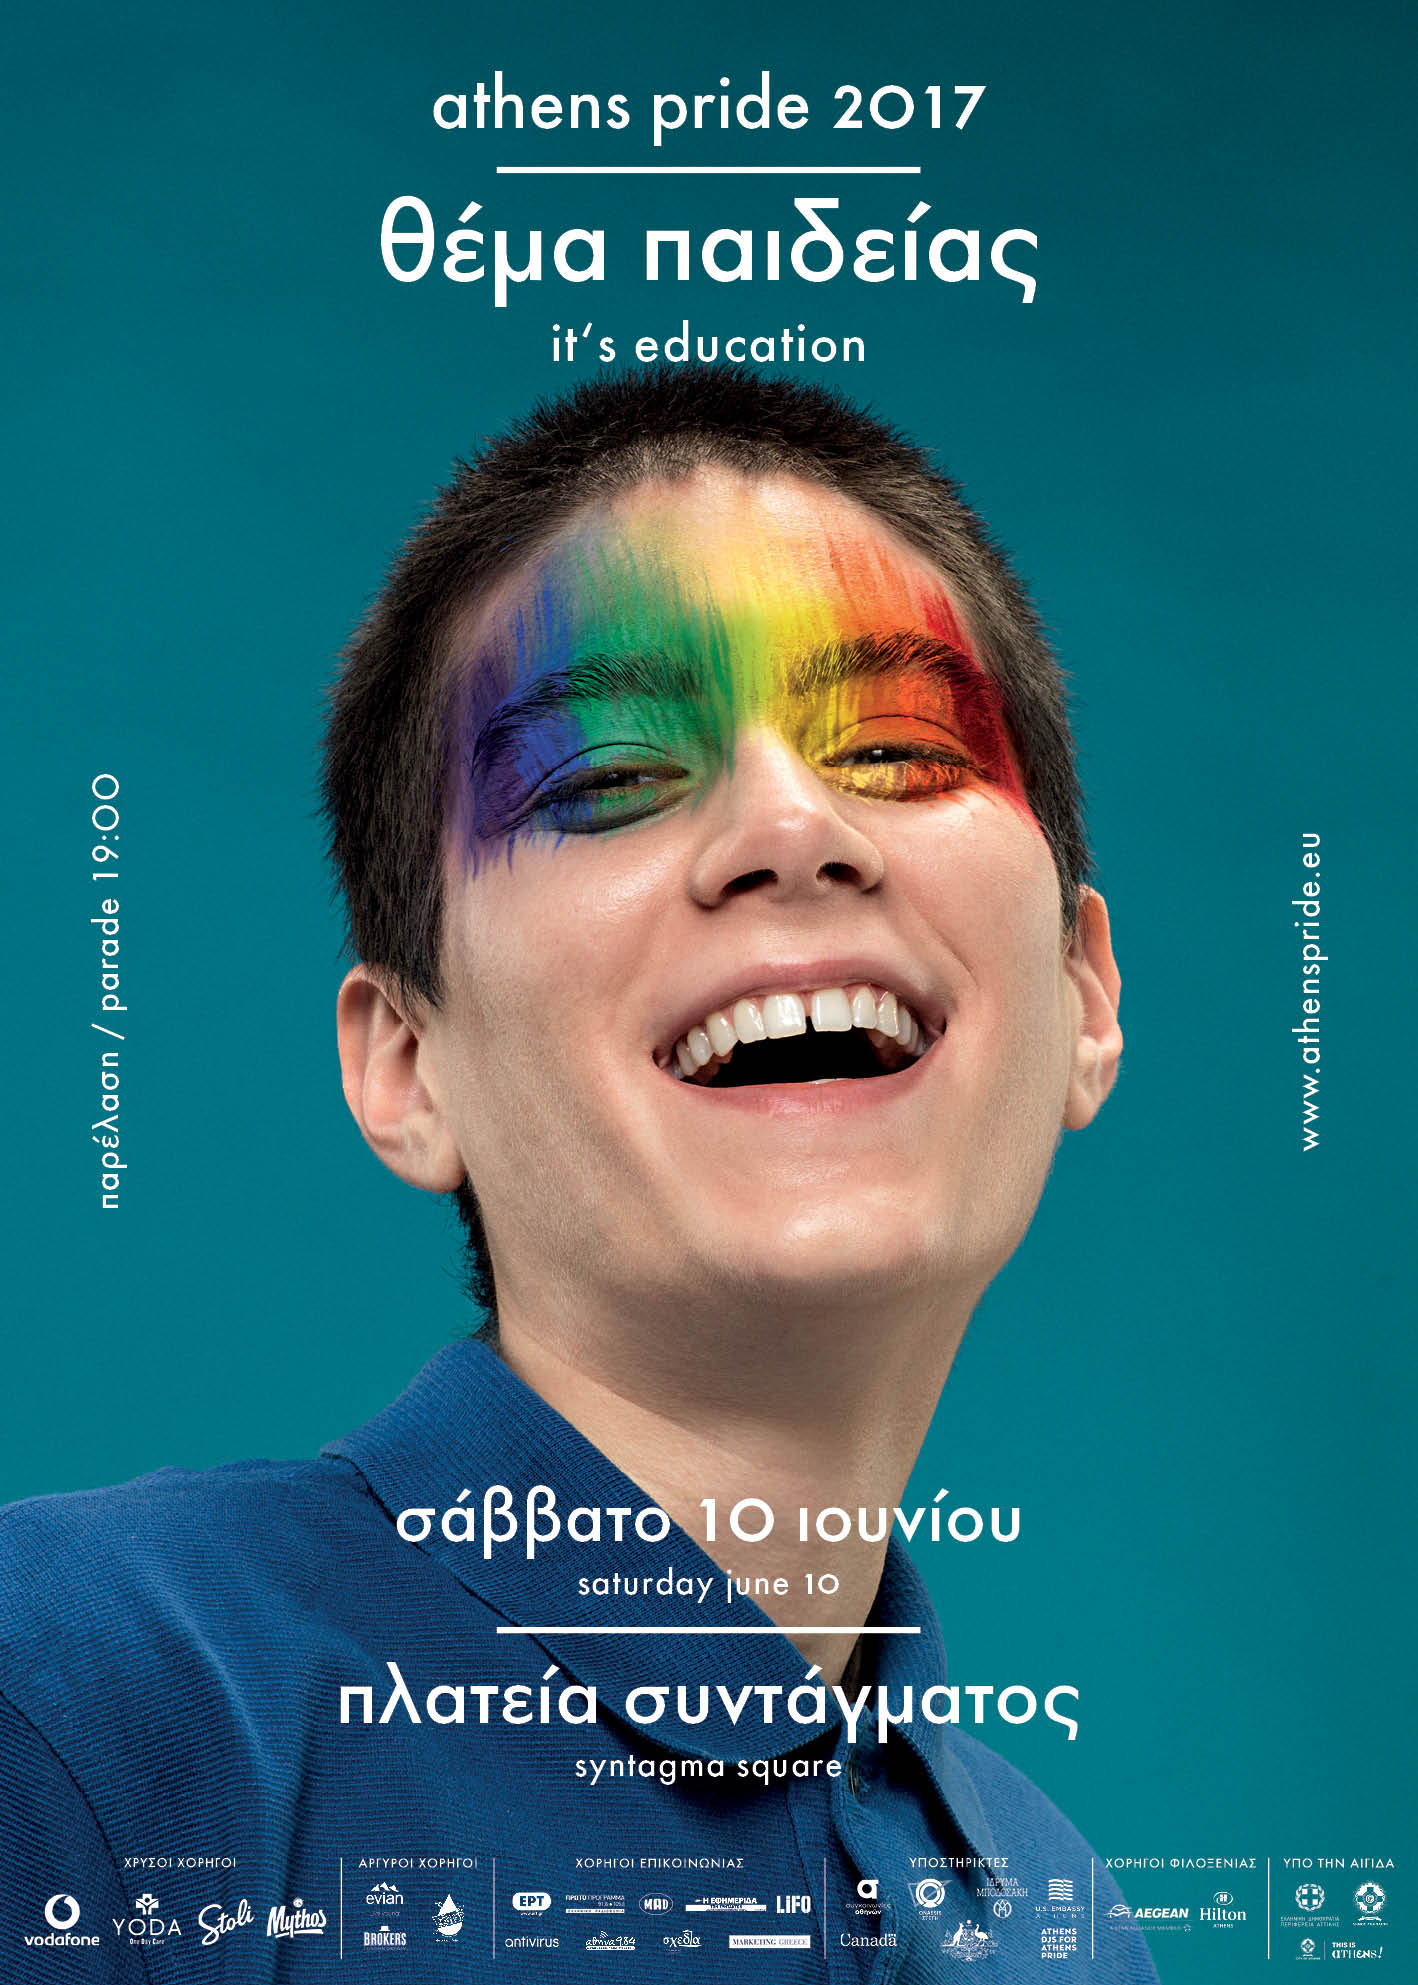 Η αφίσα του Pride για το έτος 2017